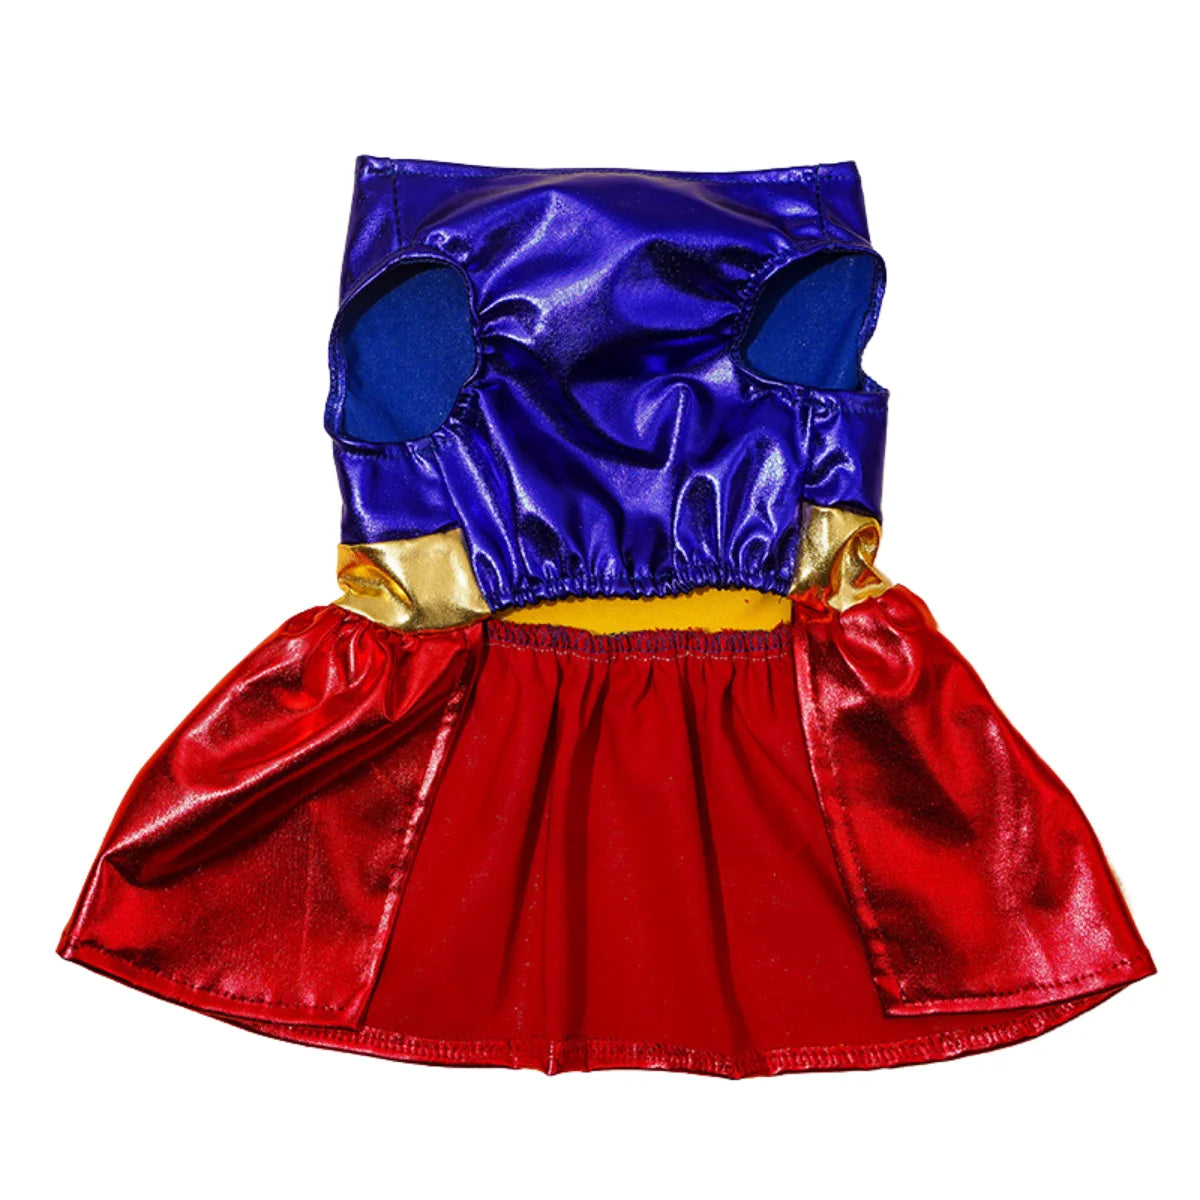 Vetopia Costume - Super Woman